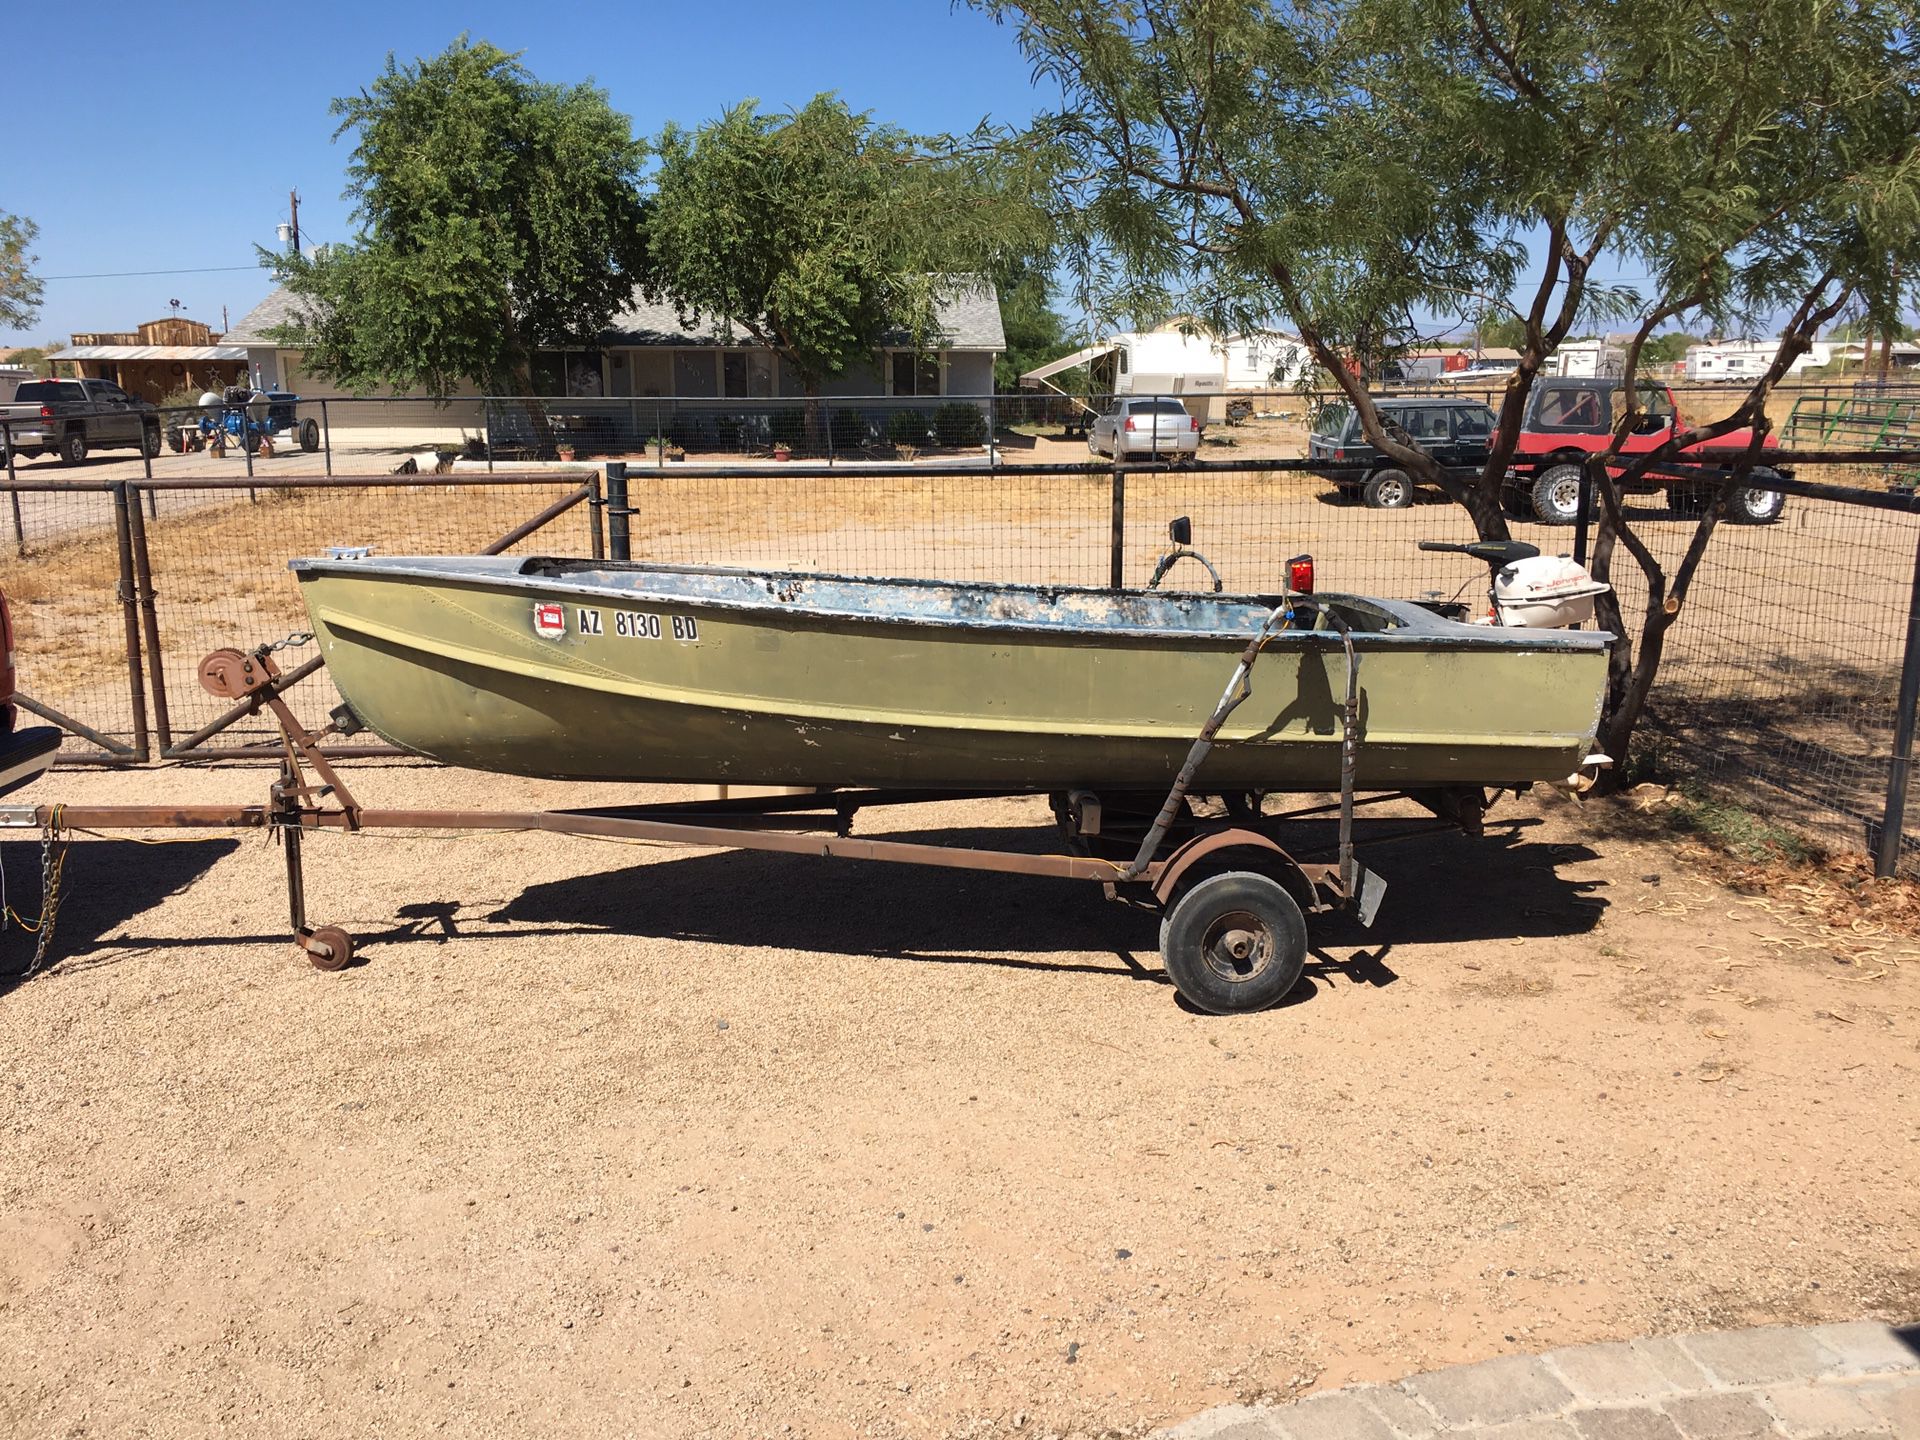 14 ft aluminum boat